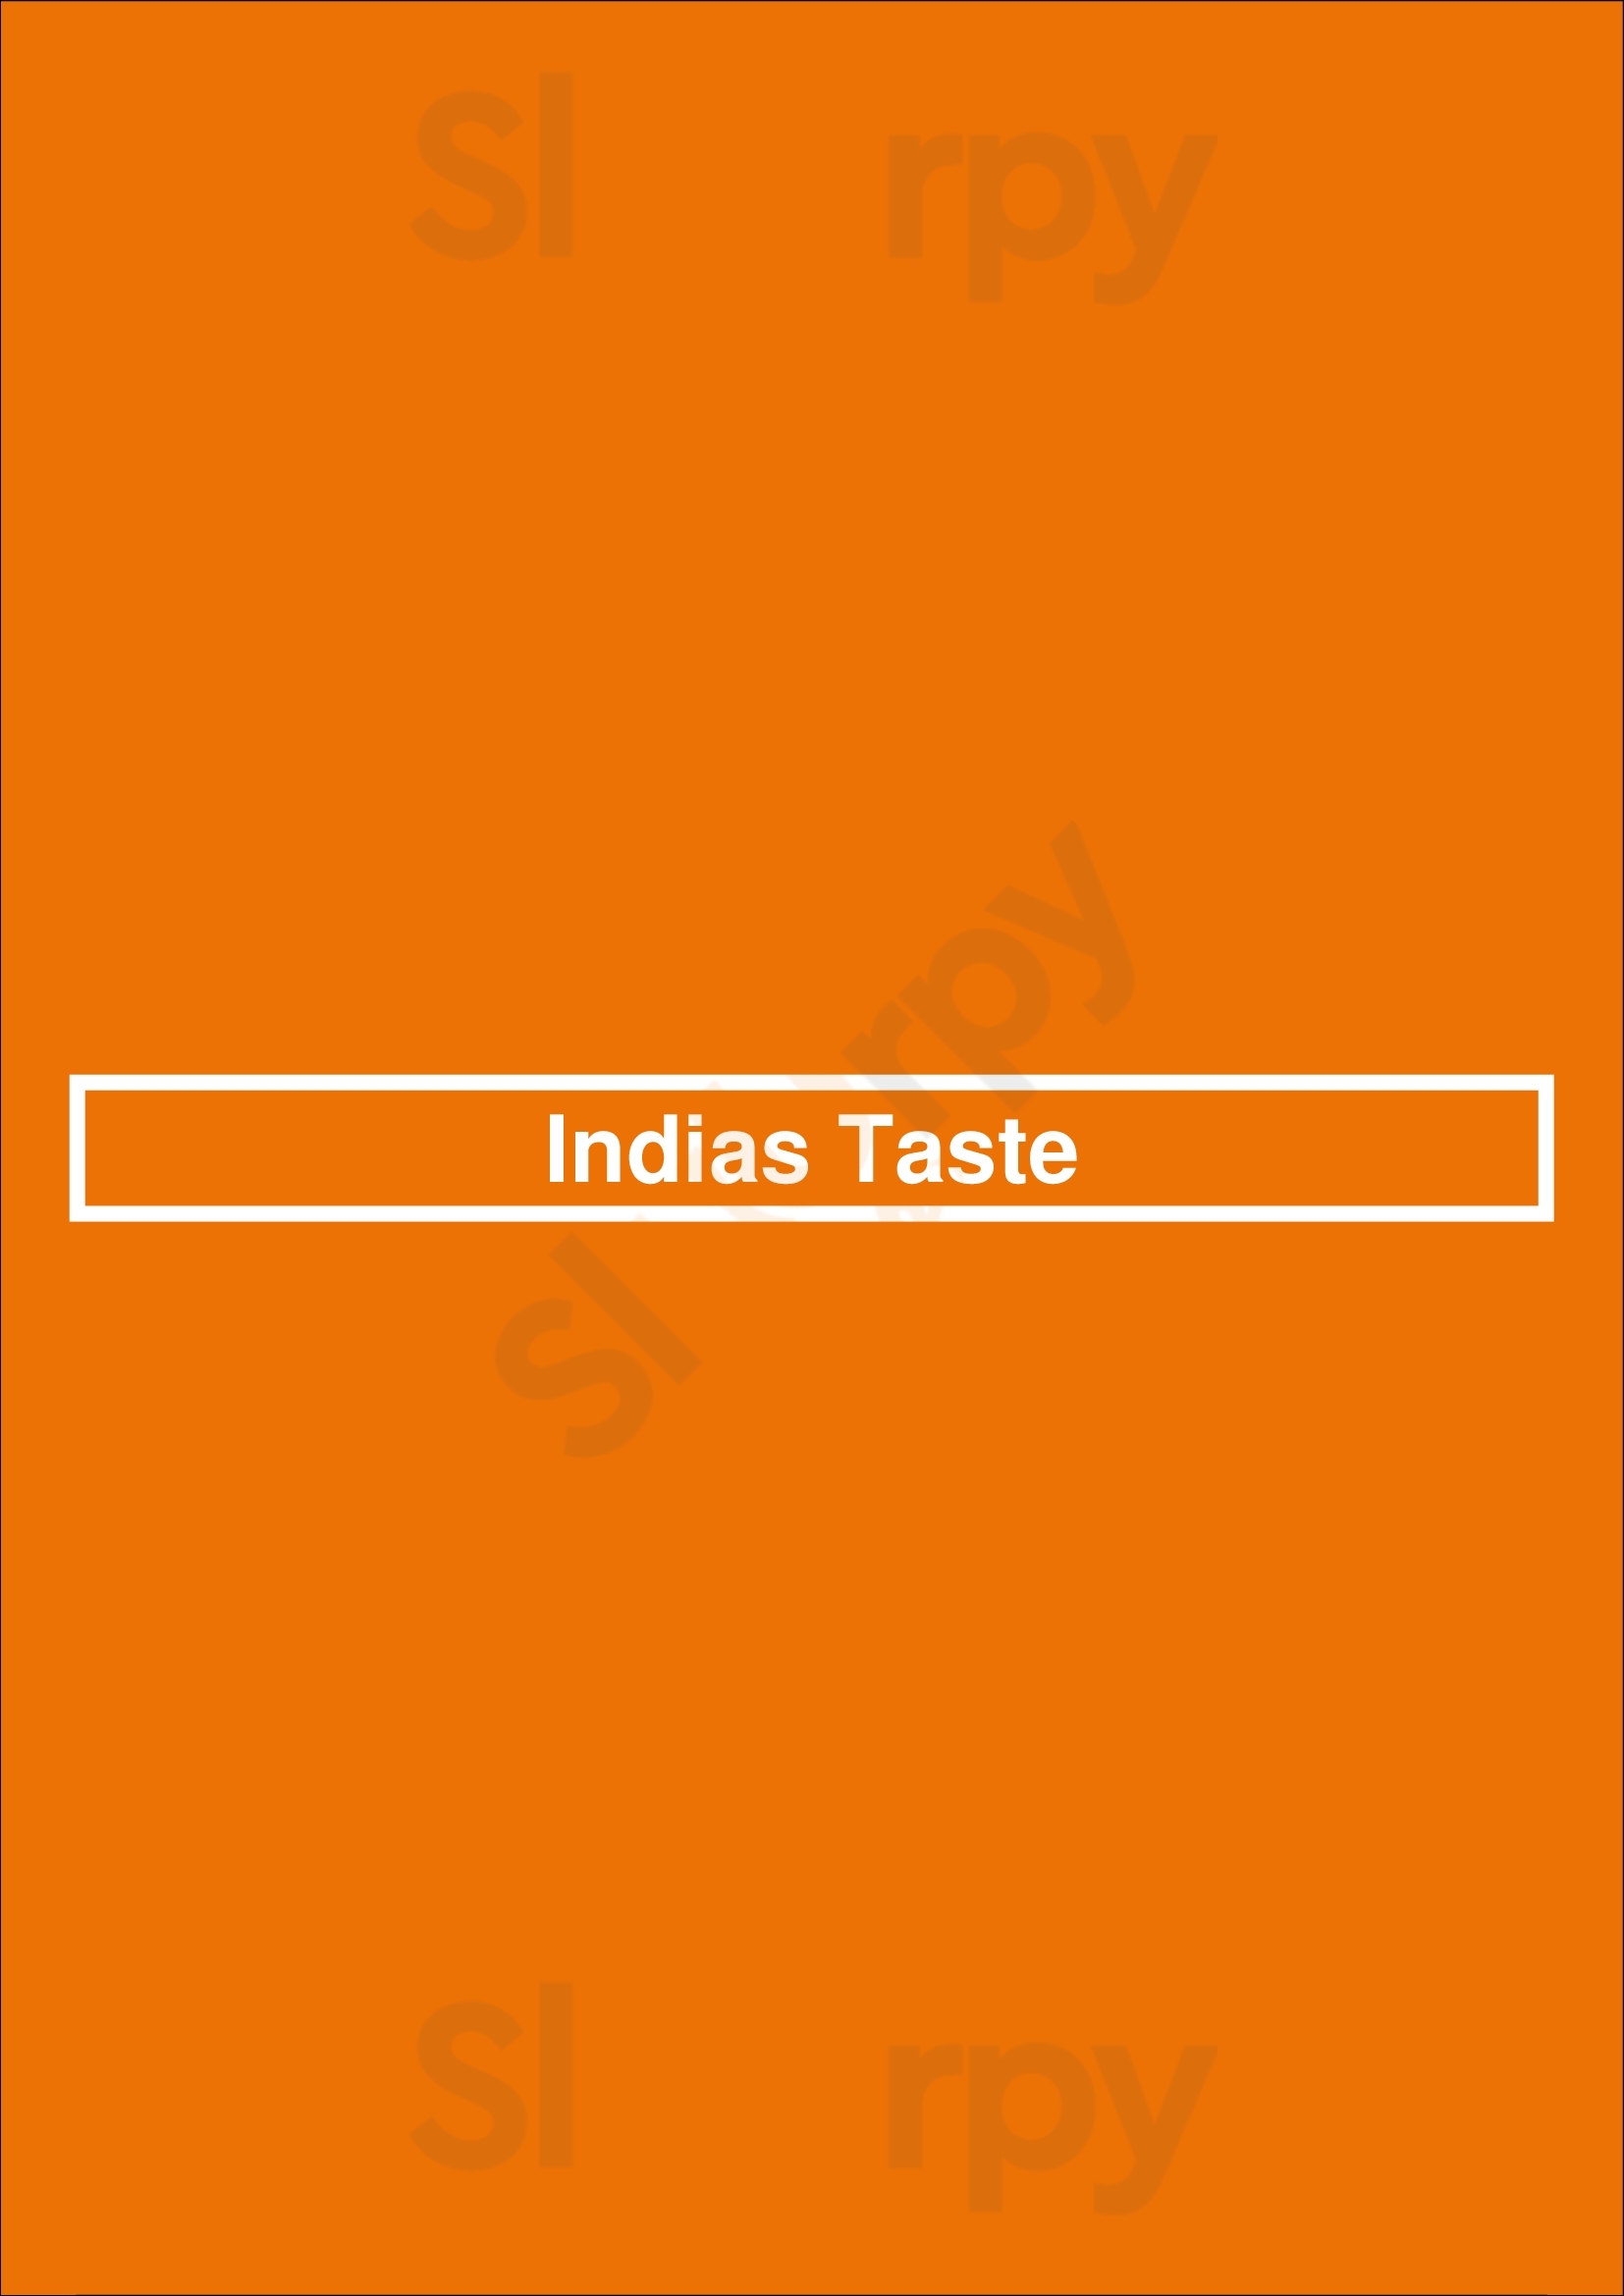 Indias Taste Mississauga Menu - 1